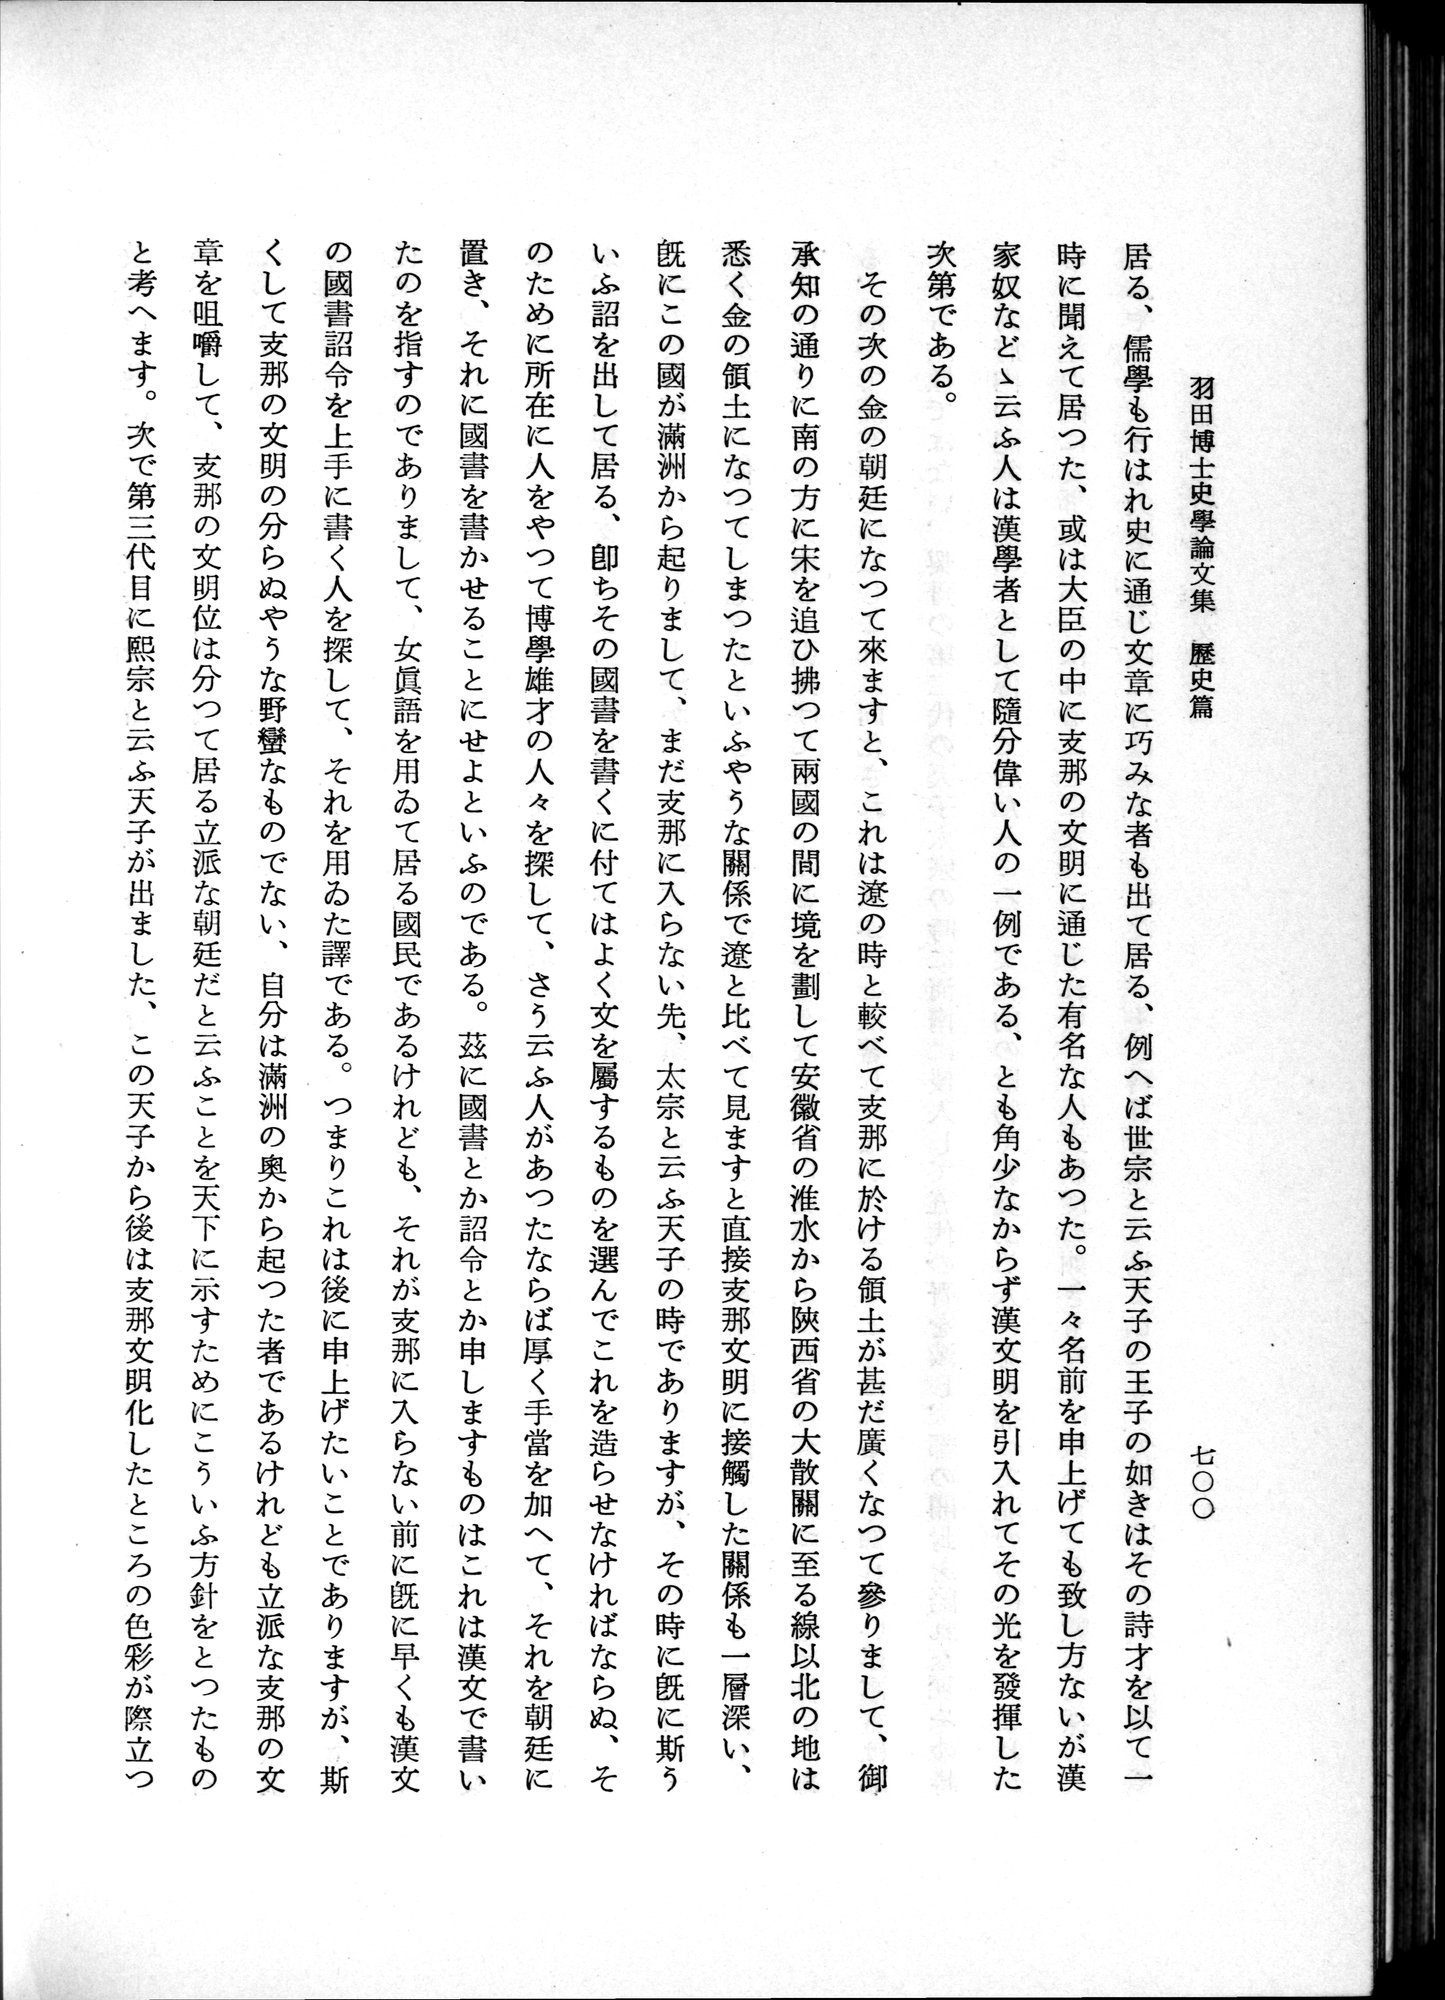 羽田博士史学論文集 : vol.1 / Page 738 (Grayscale High Resolution Image)